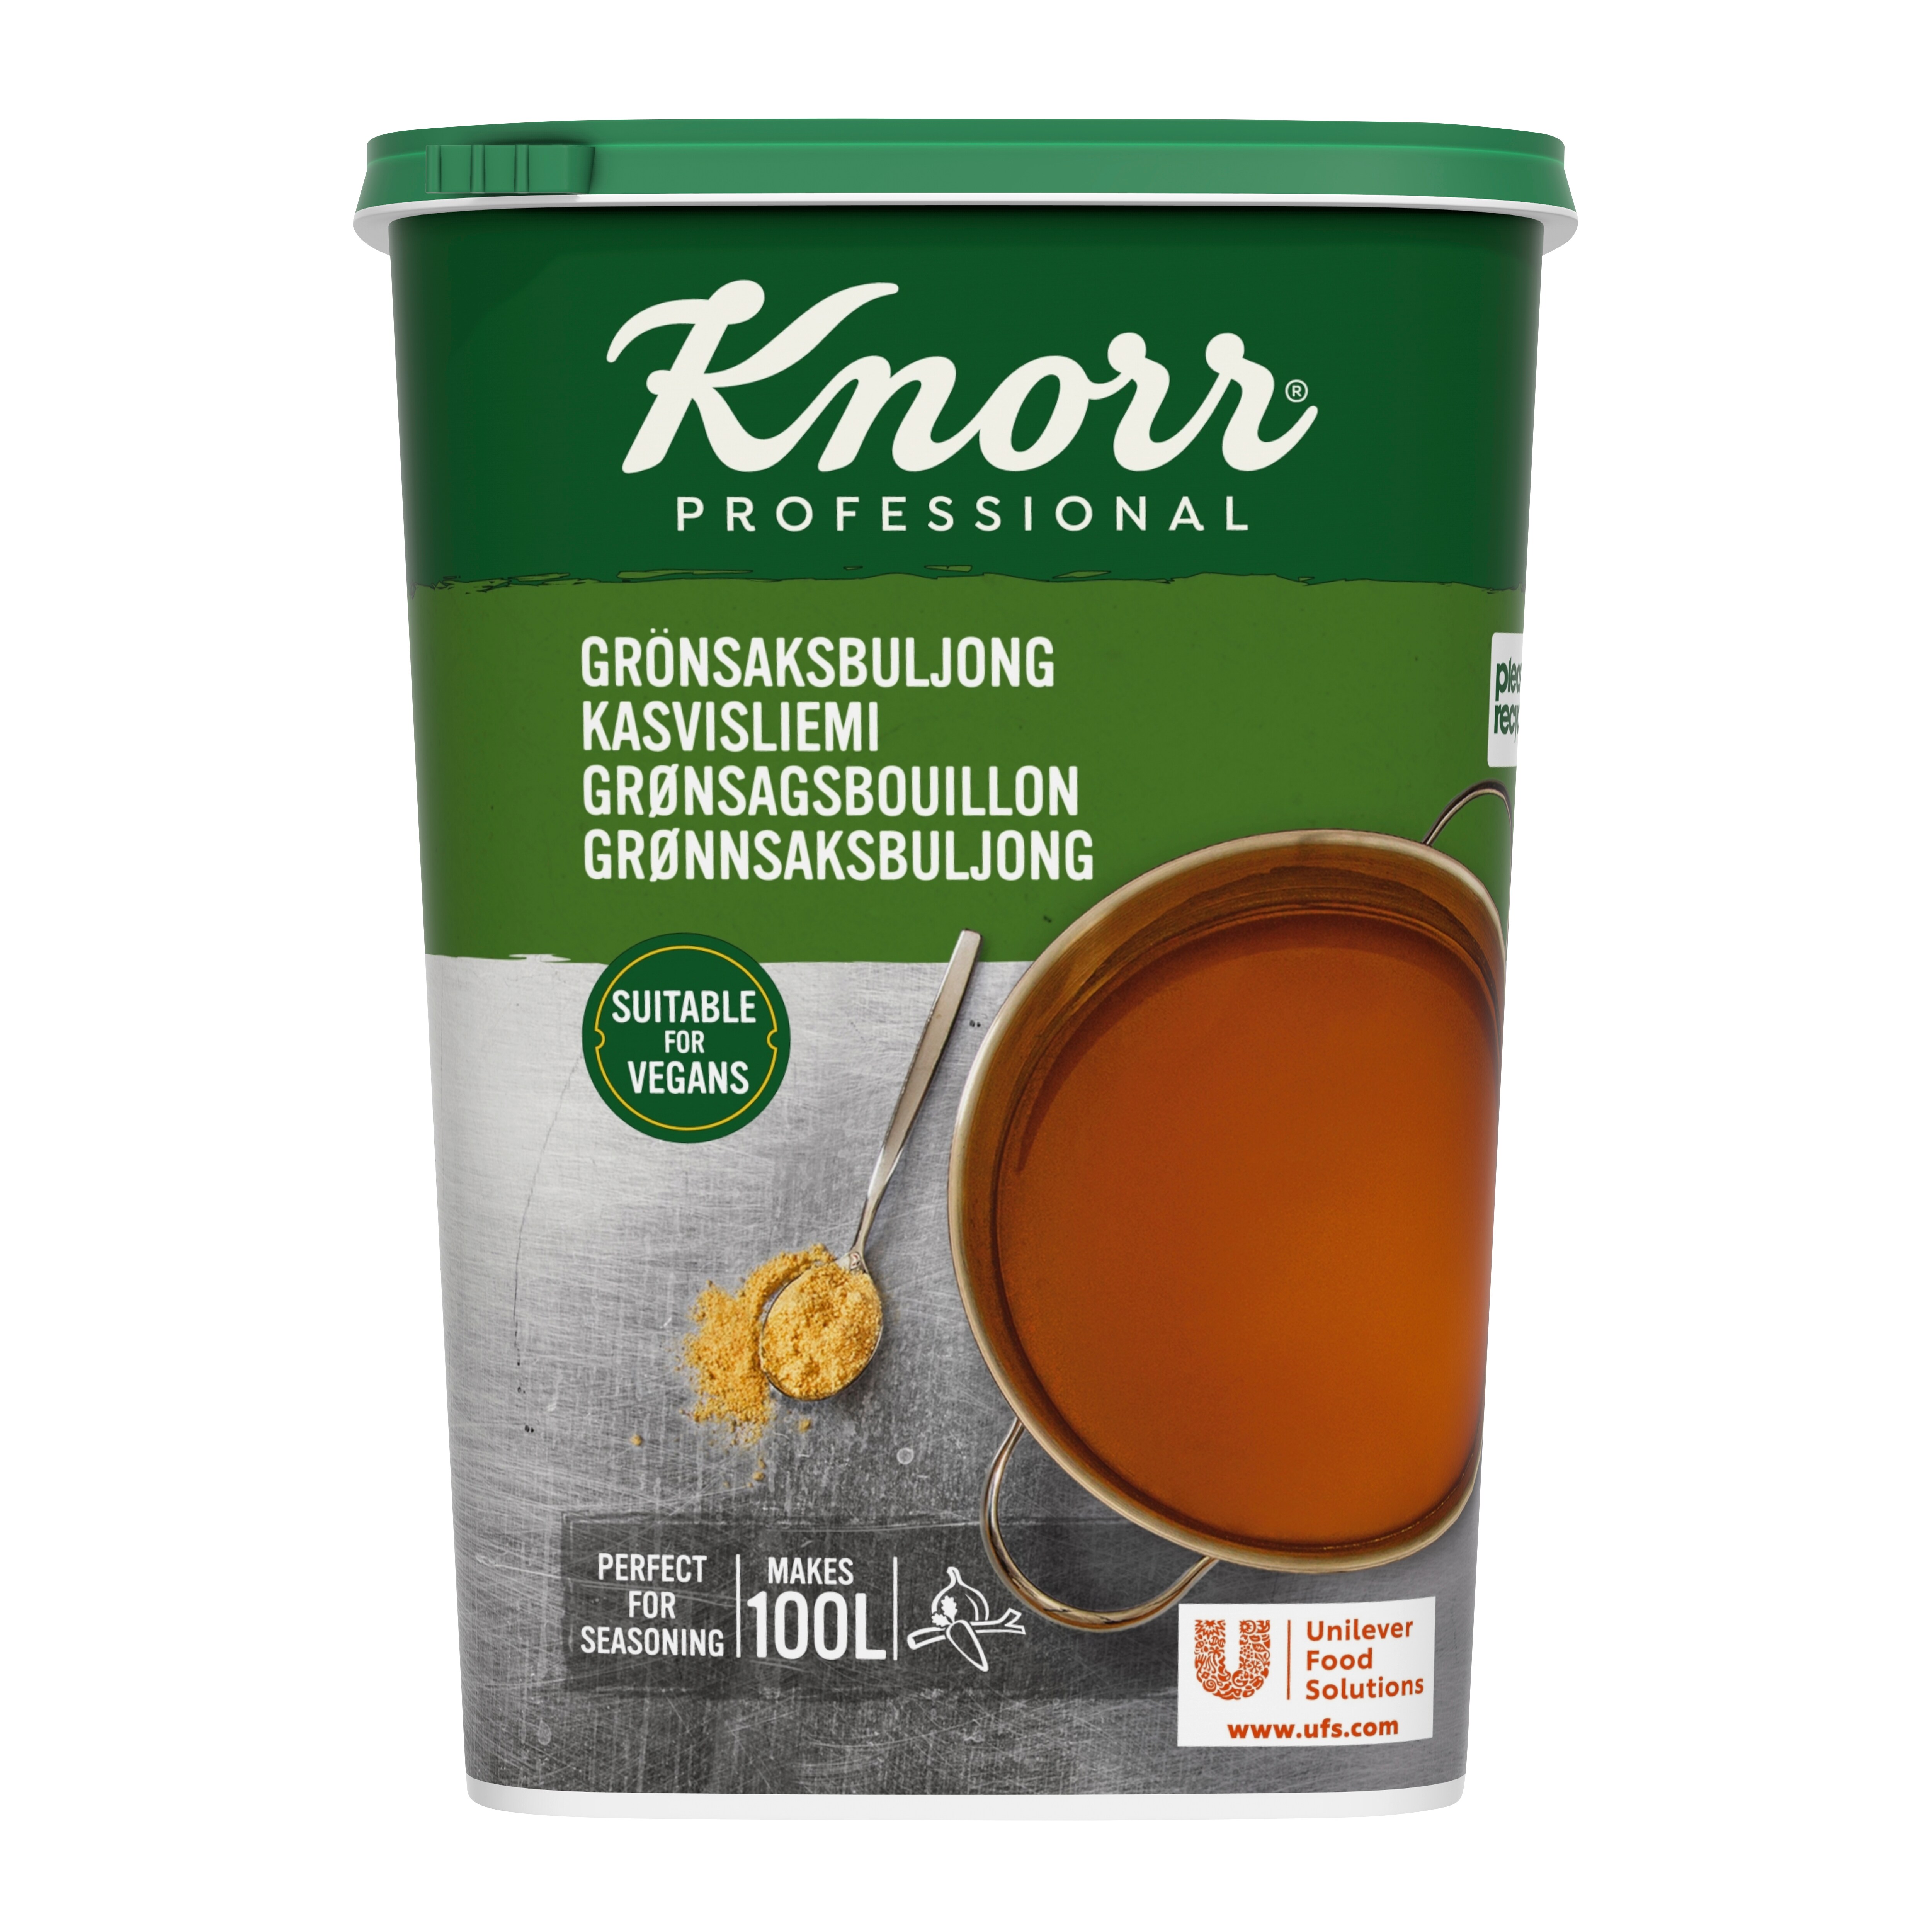 Knorr Grönsaksbuljong, pulver 3 x 1,5 kg